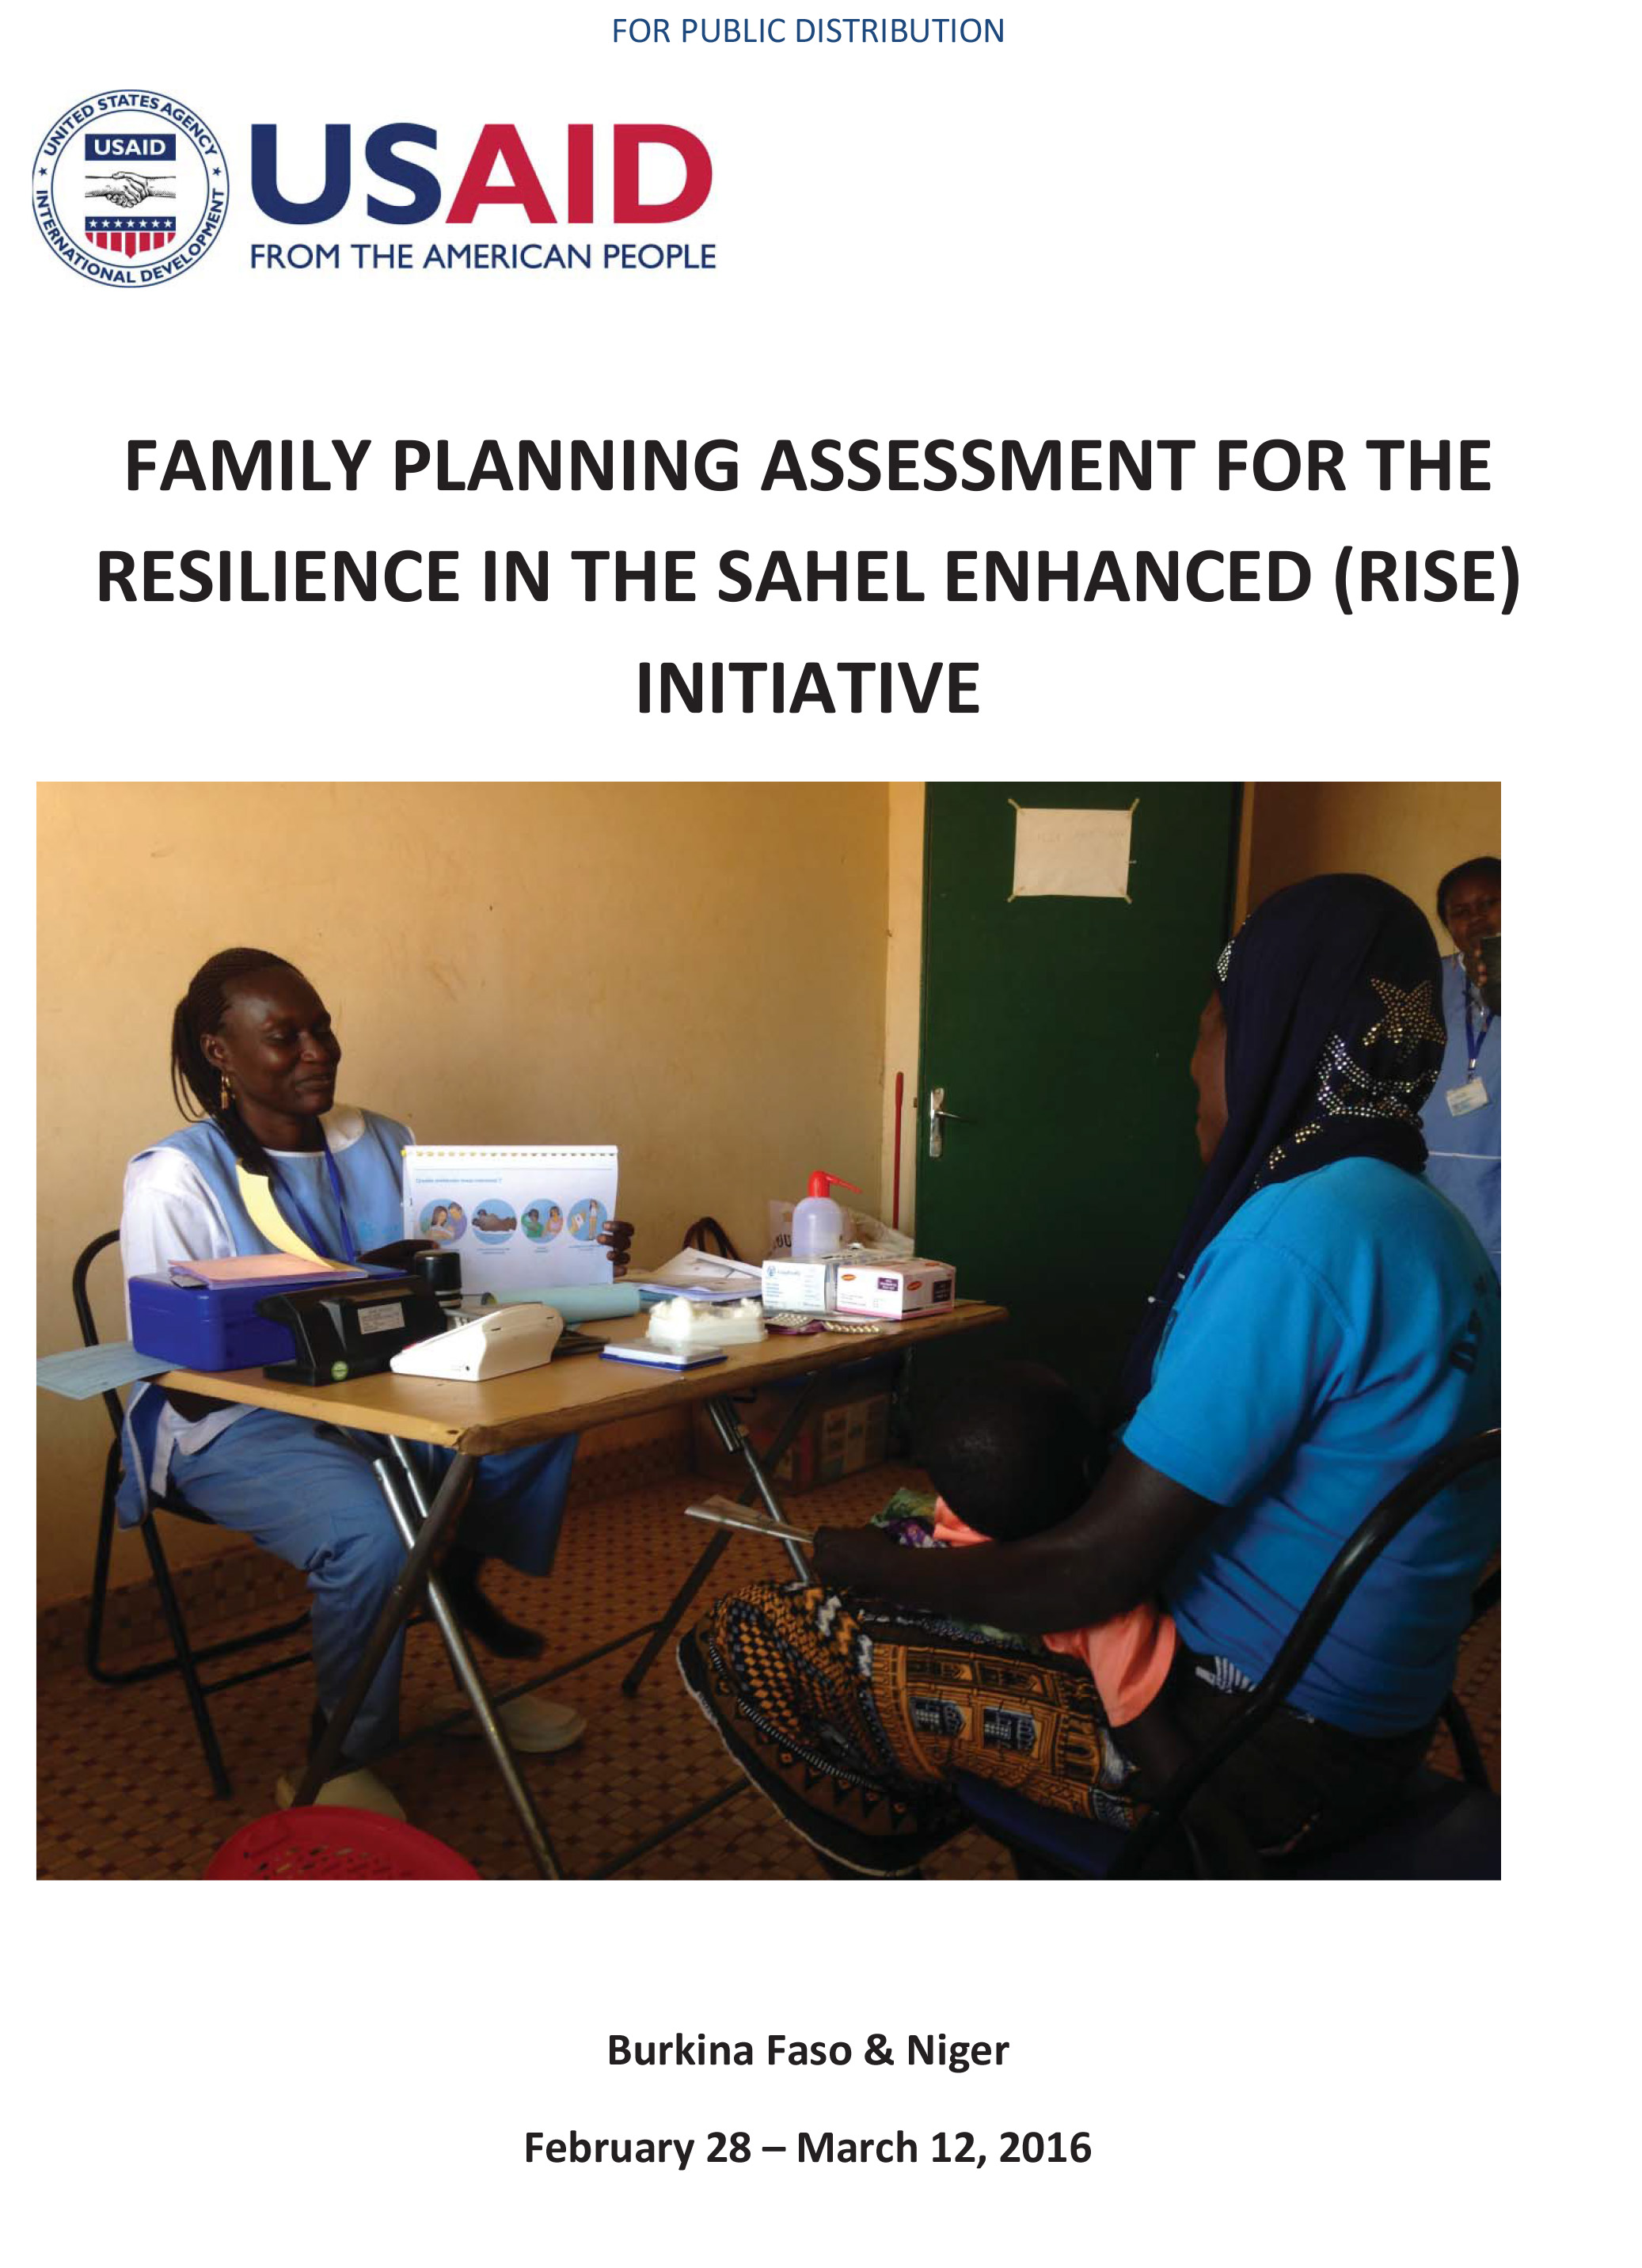 RISE Family Planning Assessment